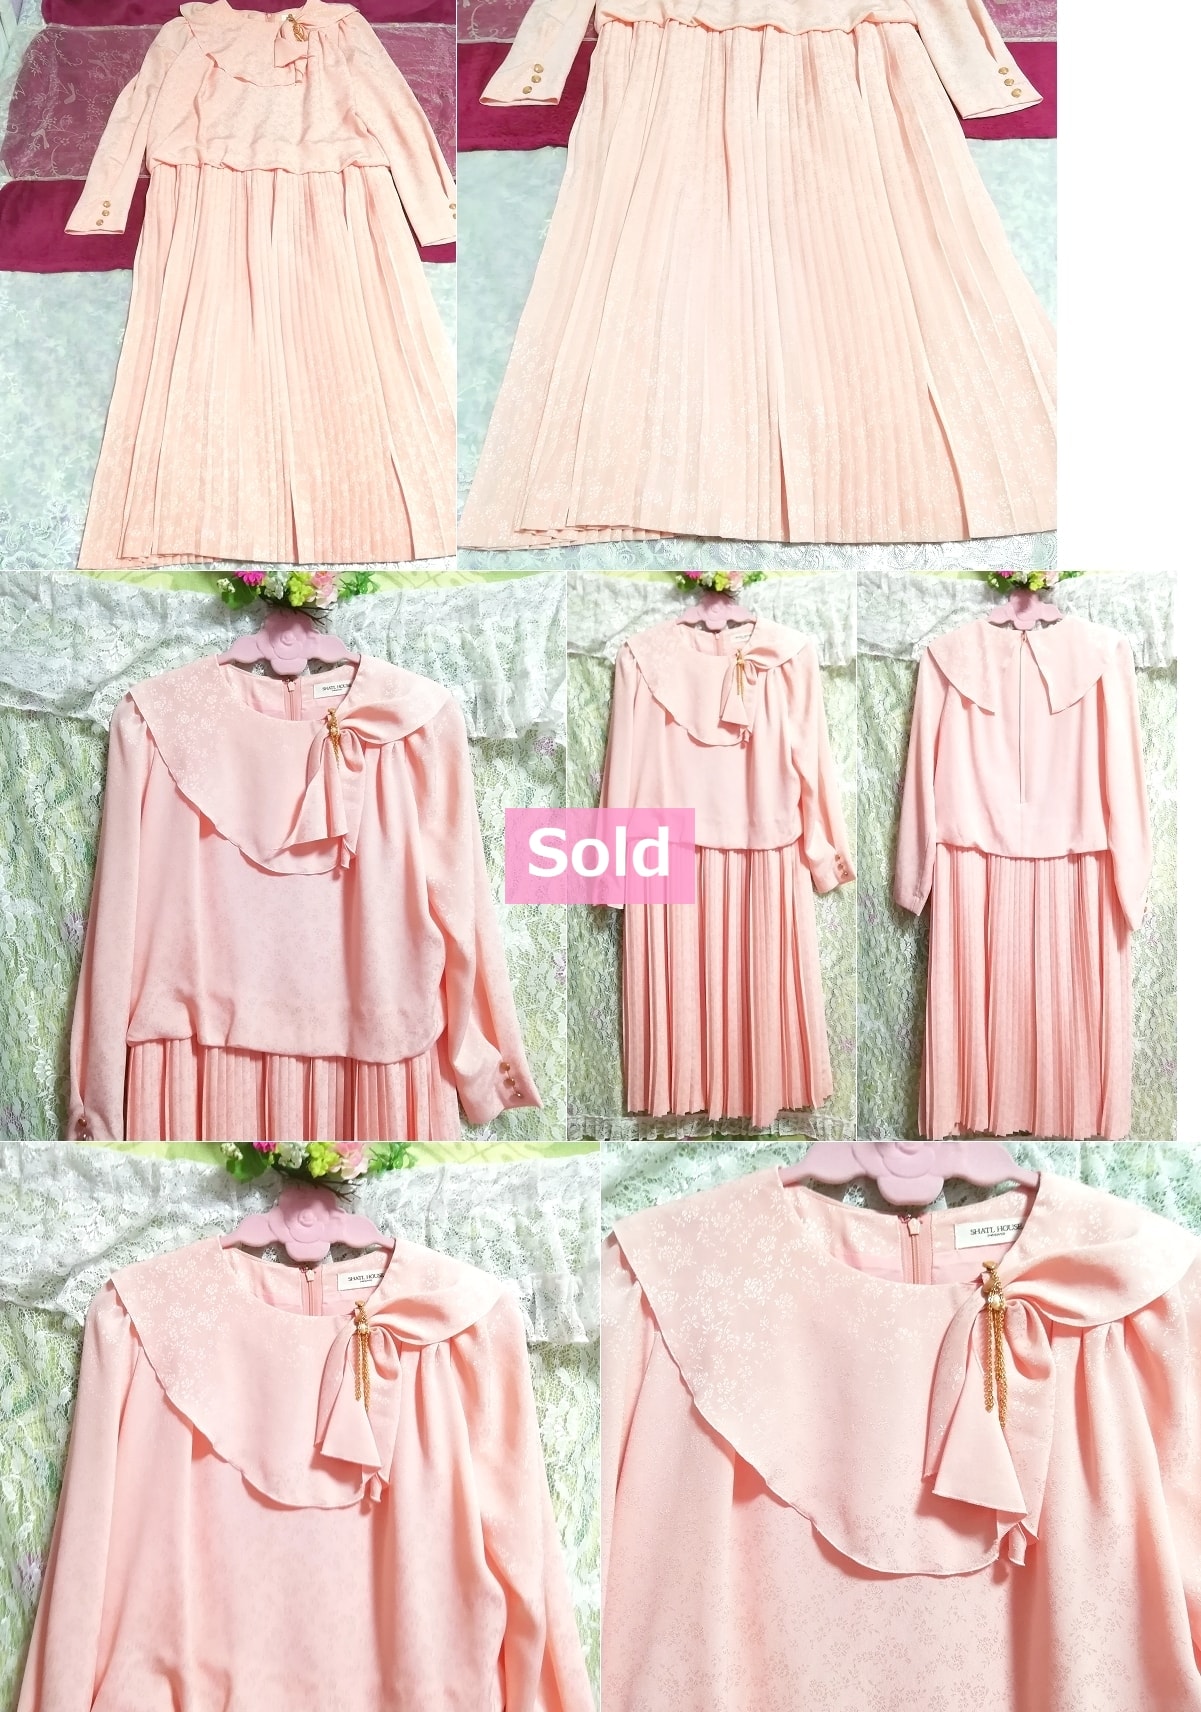 桜ピンクロングスカートワンピースドレス日本製 Cherry blossom pink long skirt dress made in Japan, ワンピース&ロングスカート&Mサイズ